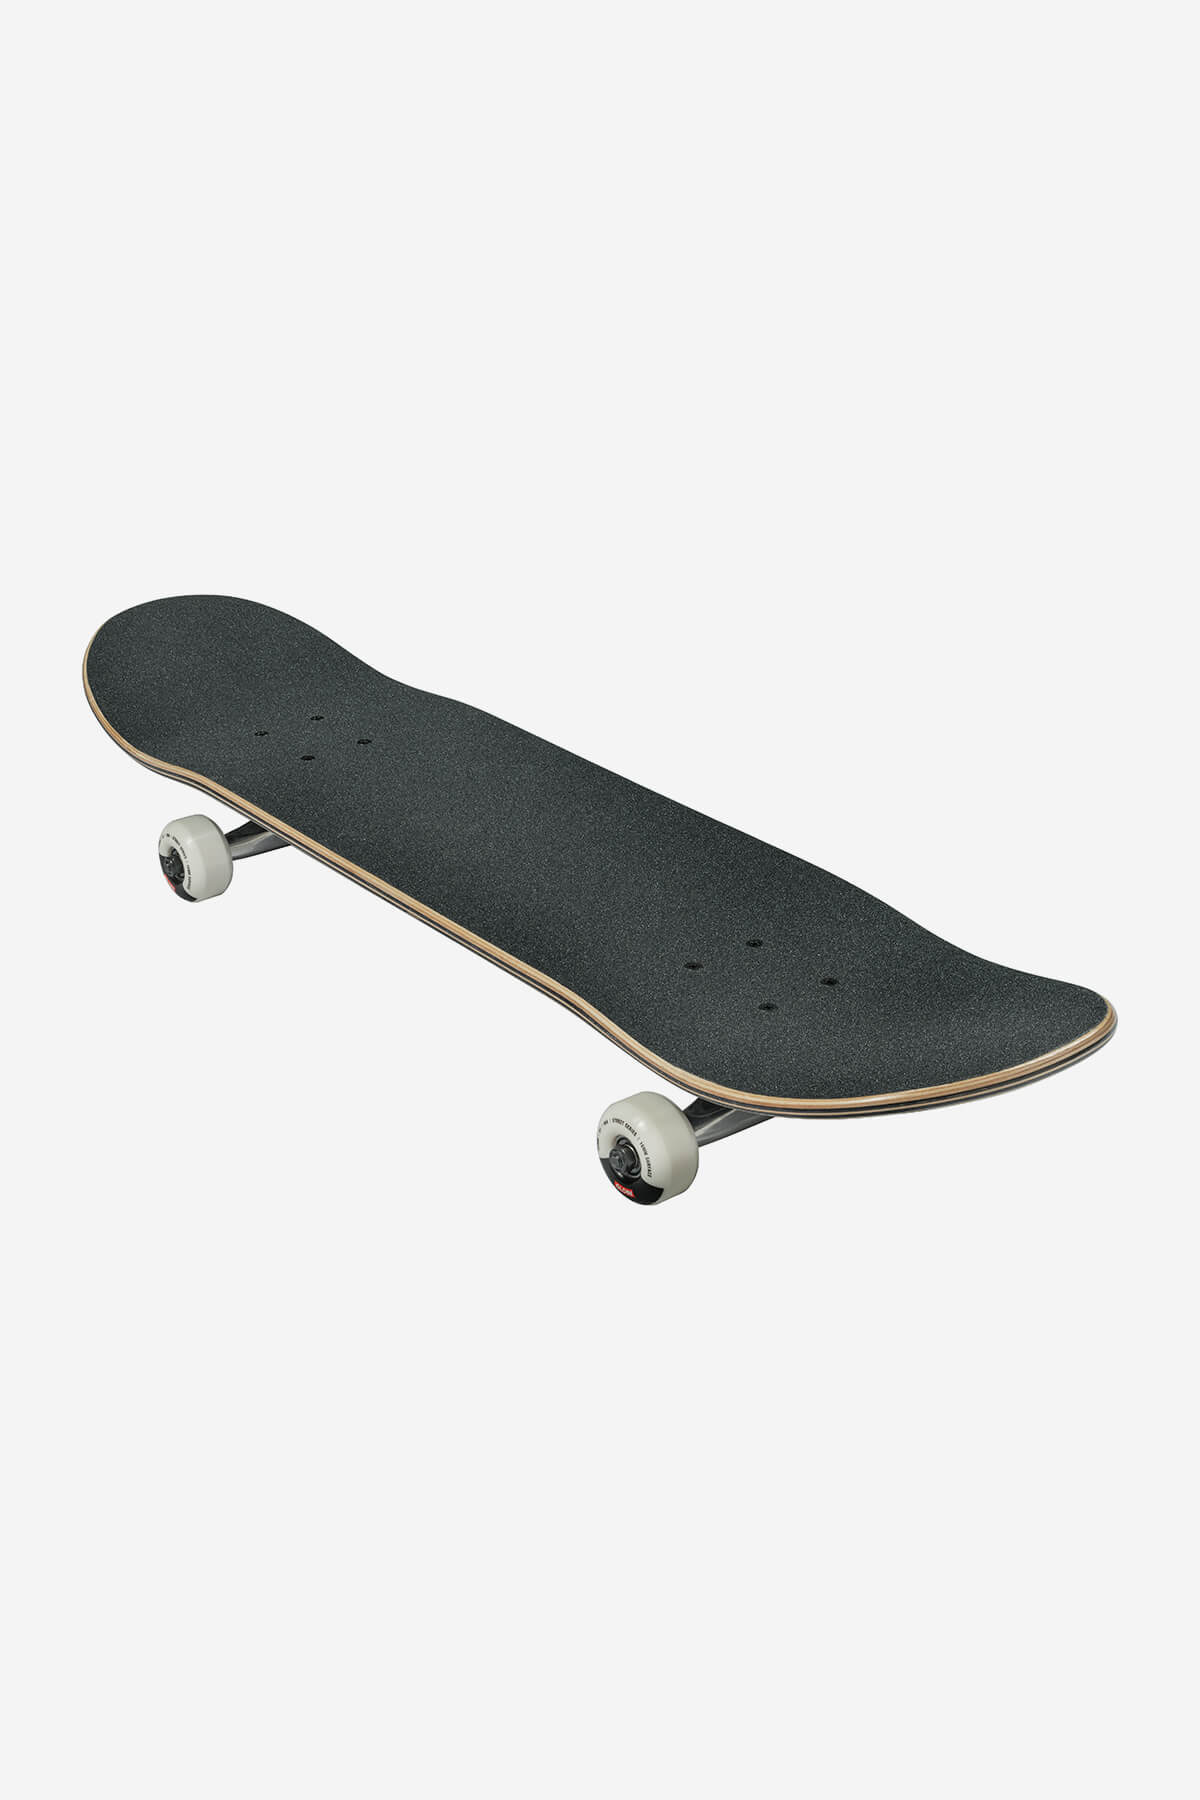 g1 lineform black 7.75" complete skateboard